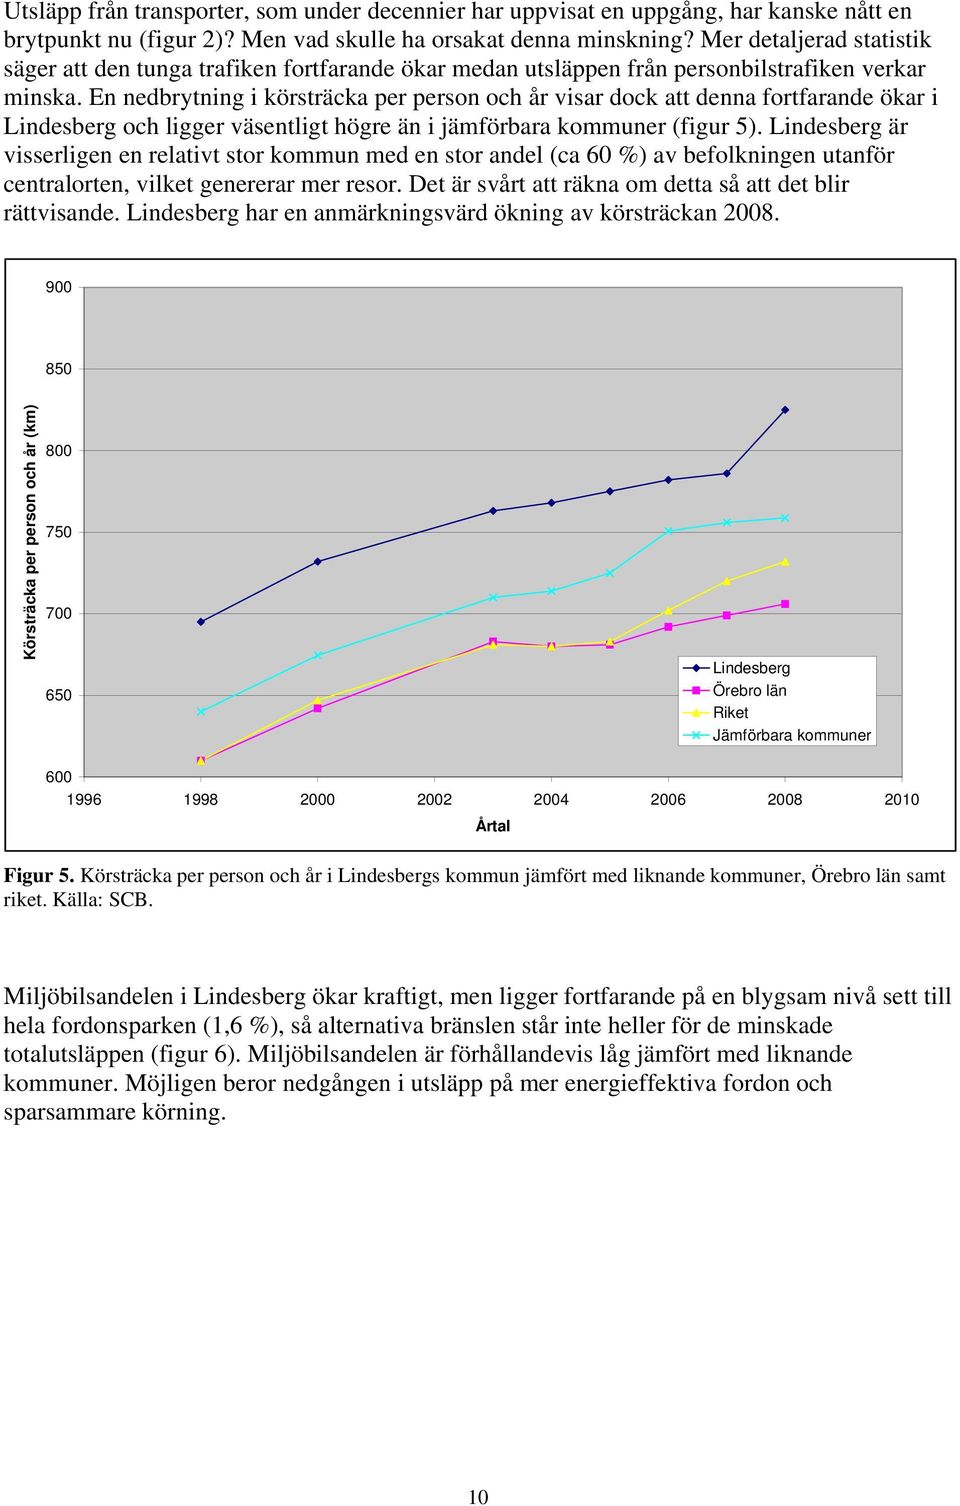 En nedbrytning i körsträcka per person och år visar dock att denna fortfarande ökar i Lindesberg och ligger väsentligt högre än i jämförbara kommuner (figur 5).